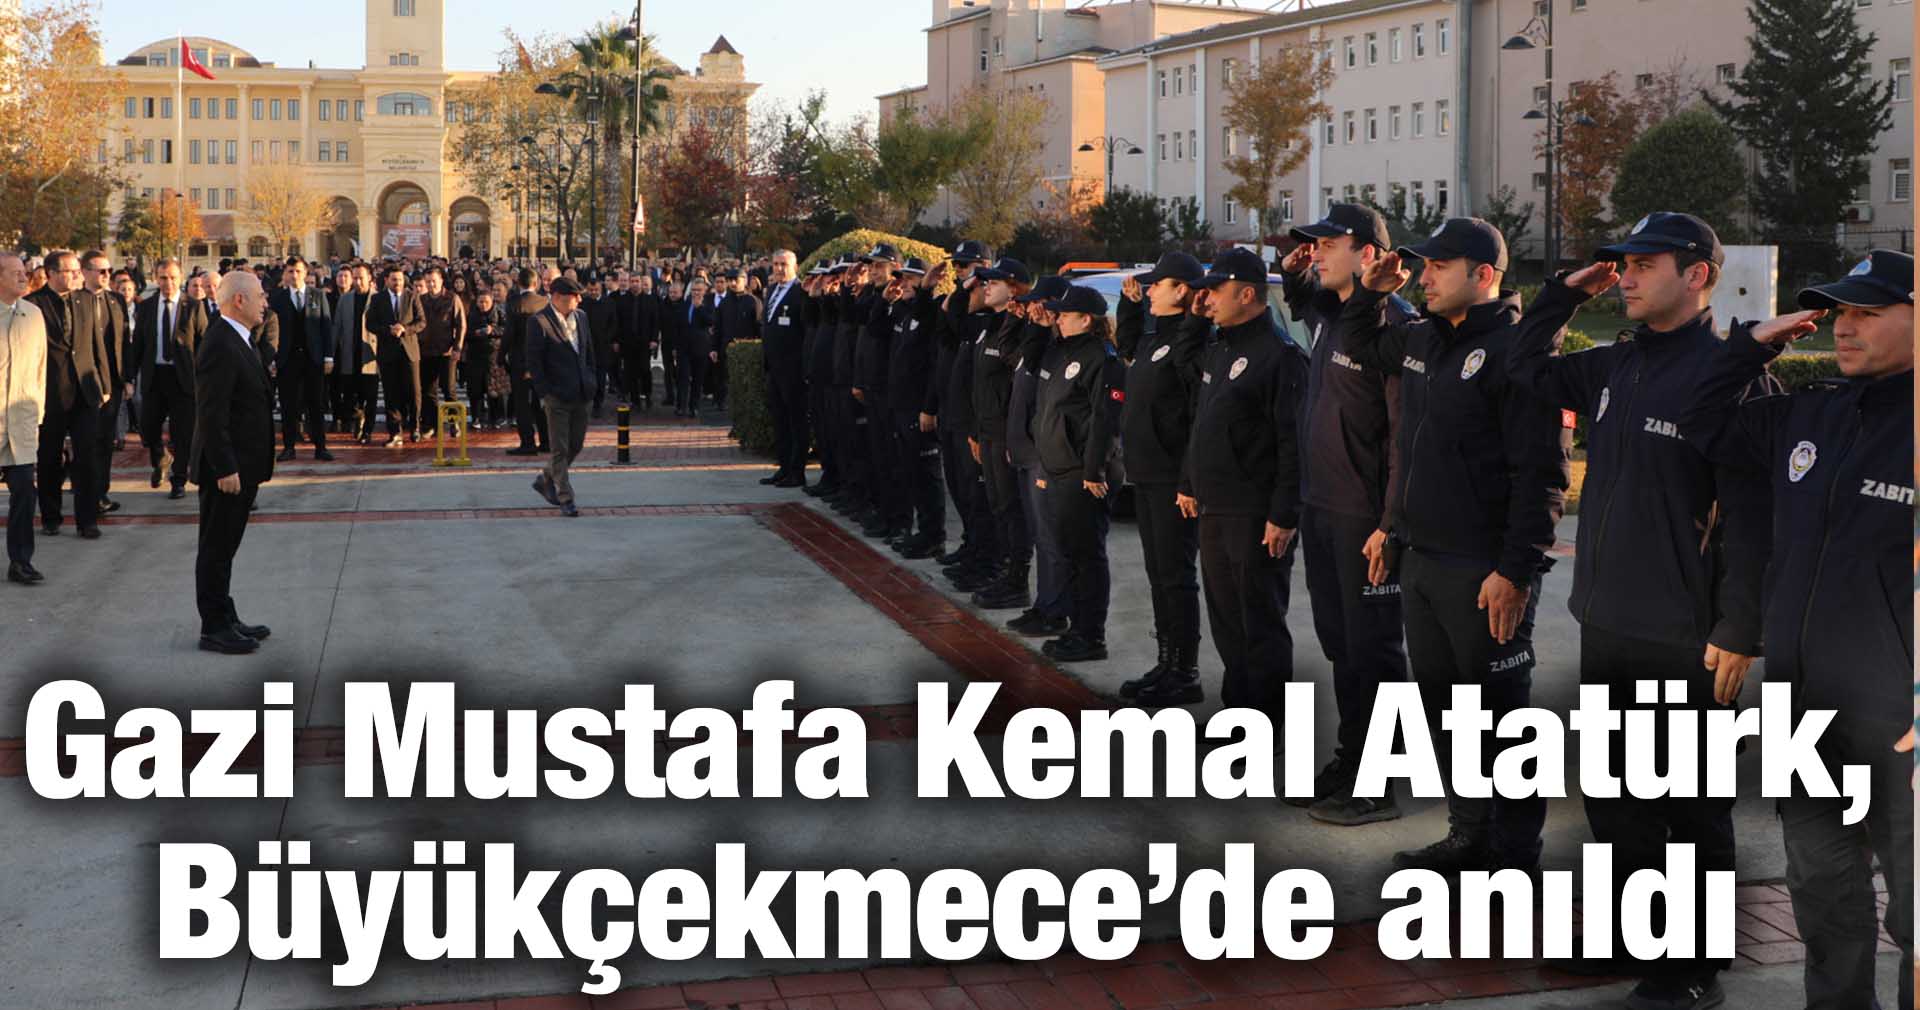 Gazi Mustafa Kemal Atatürk, Büyükçekmece’de anıldı